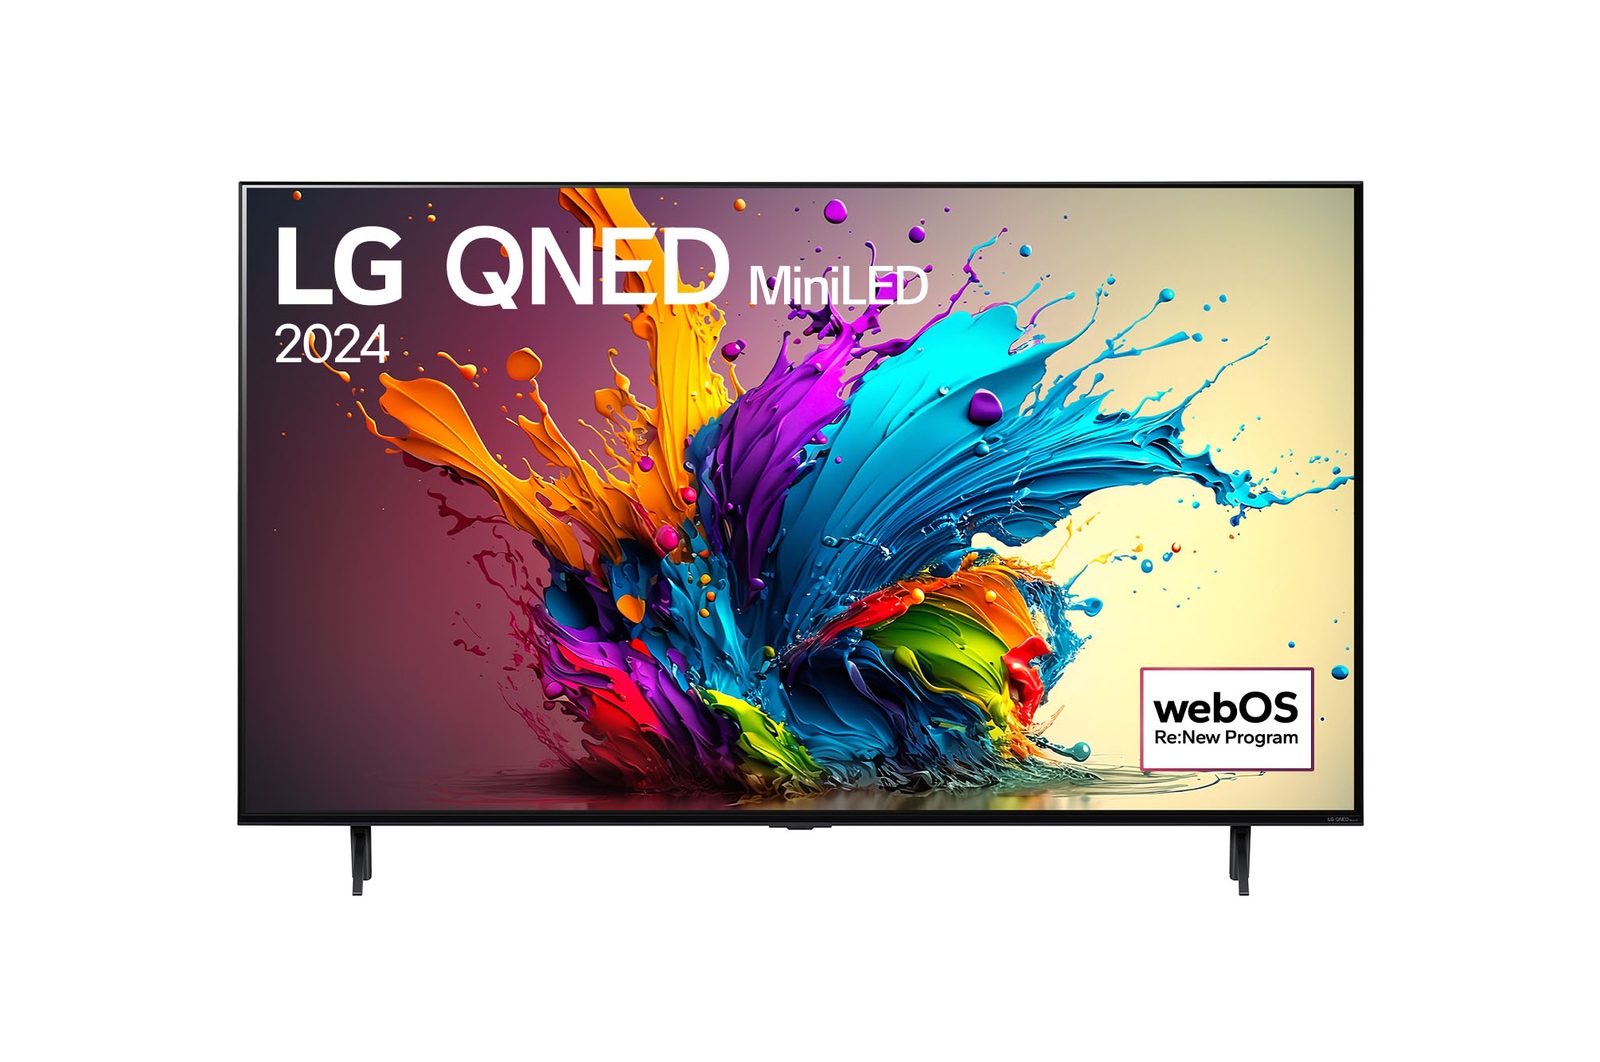 Вид спереди на телевизор LG QNED, QNED90 с текстом LG QNED MiniLED, 2024 и логотипом webOS Re:New Program на экране